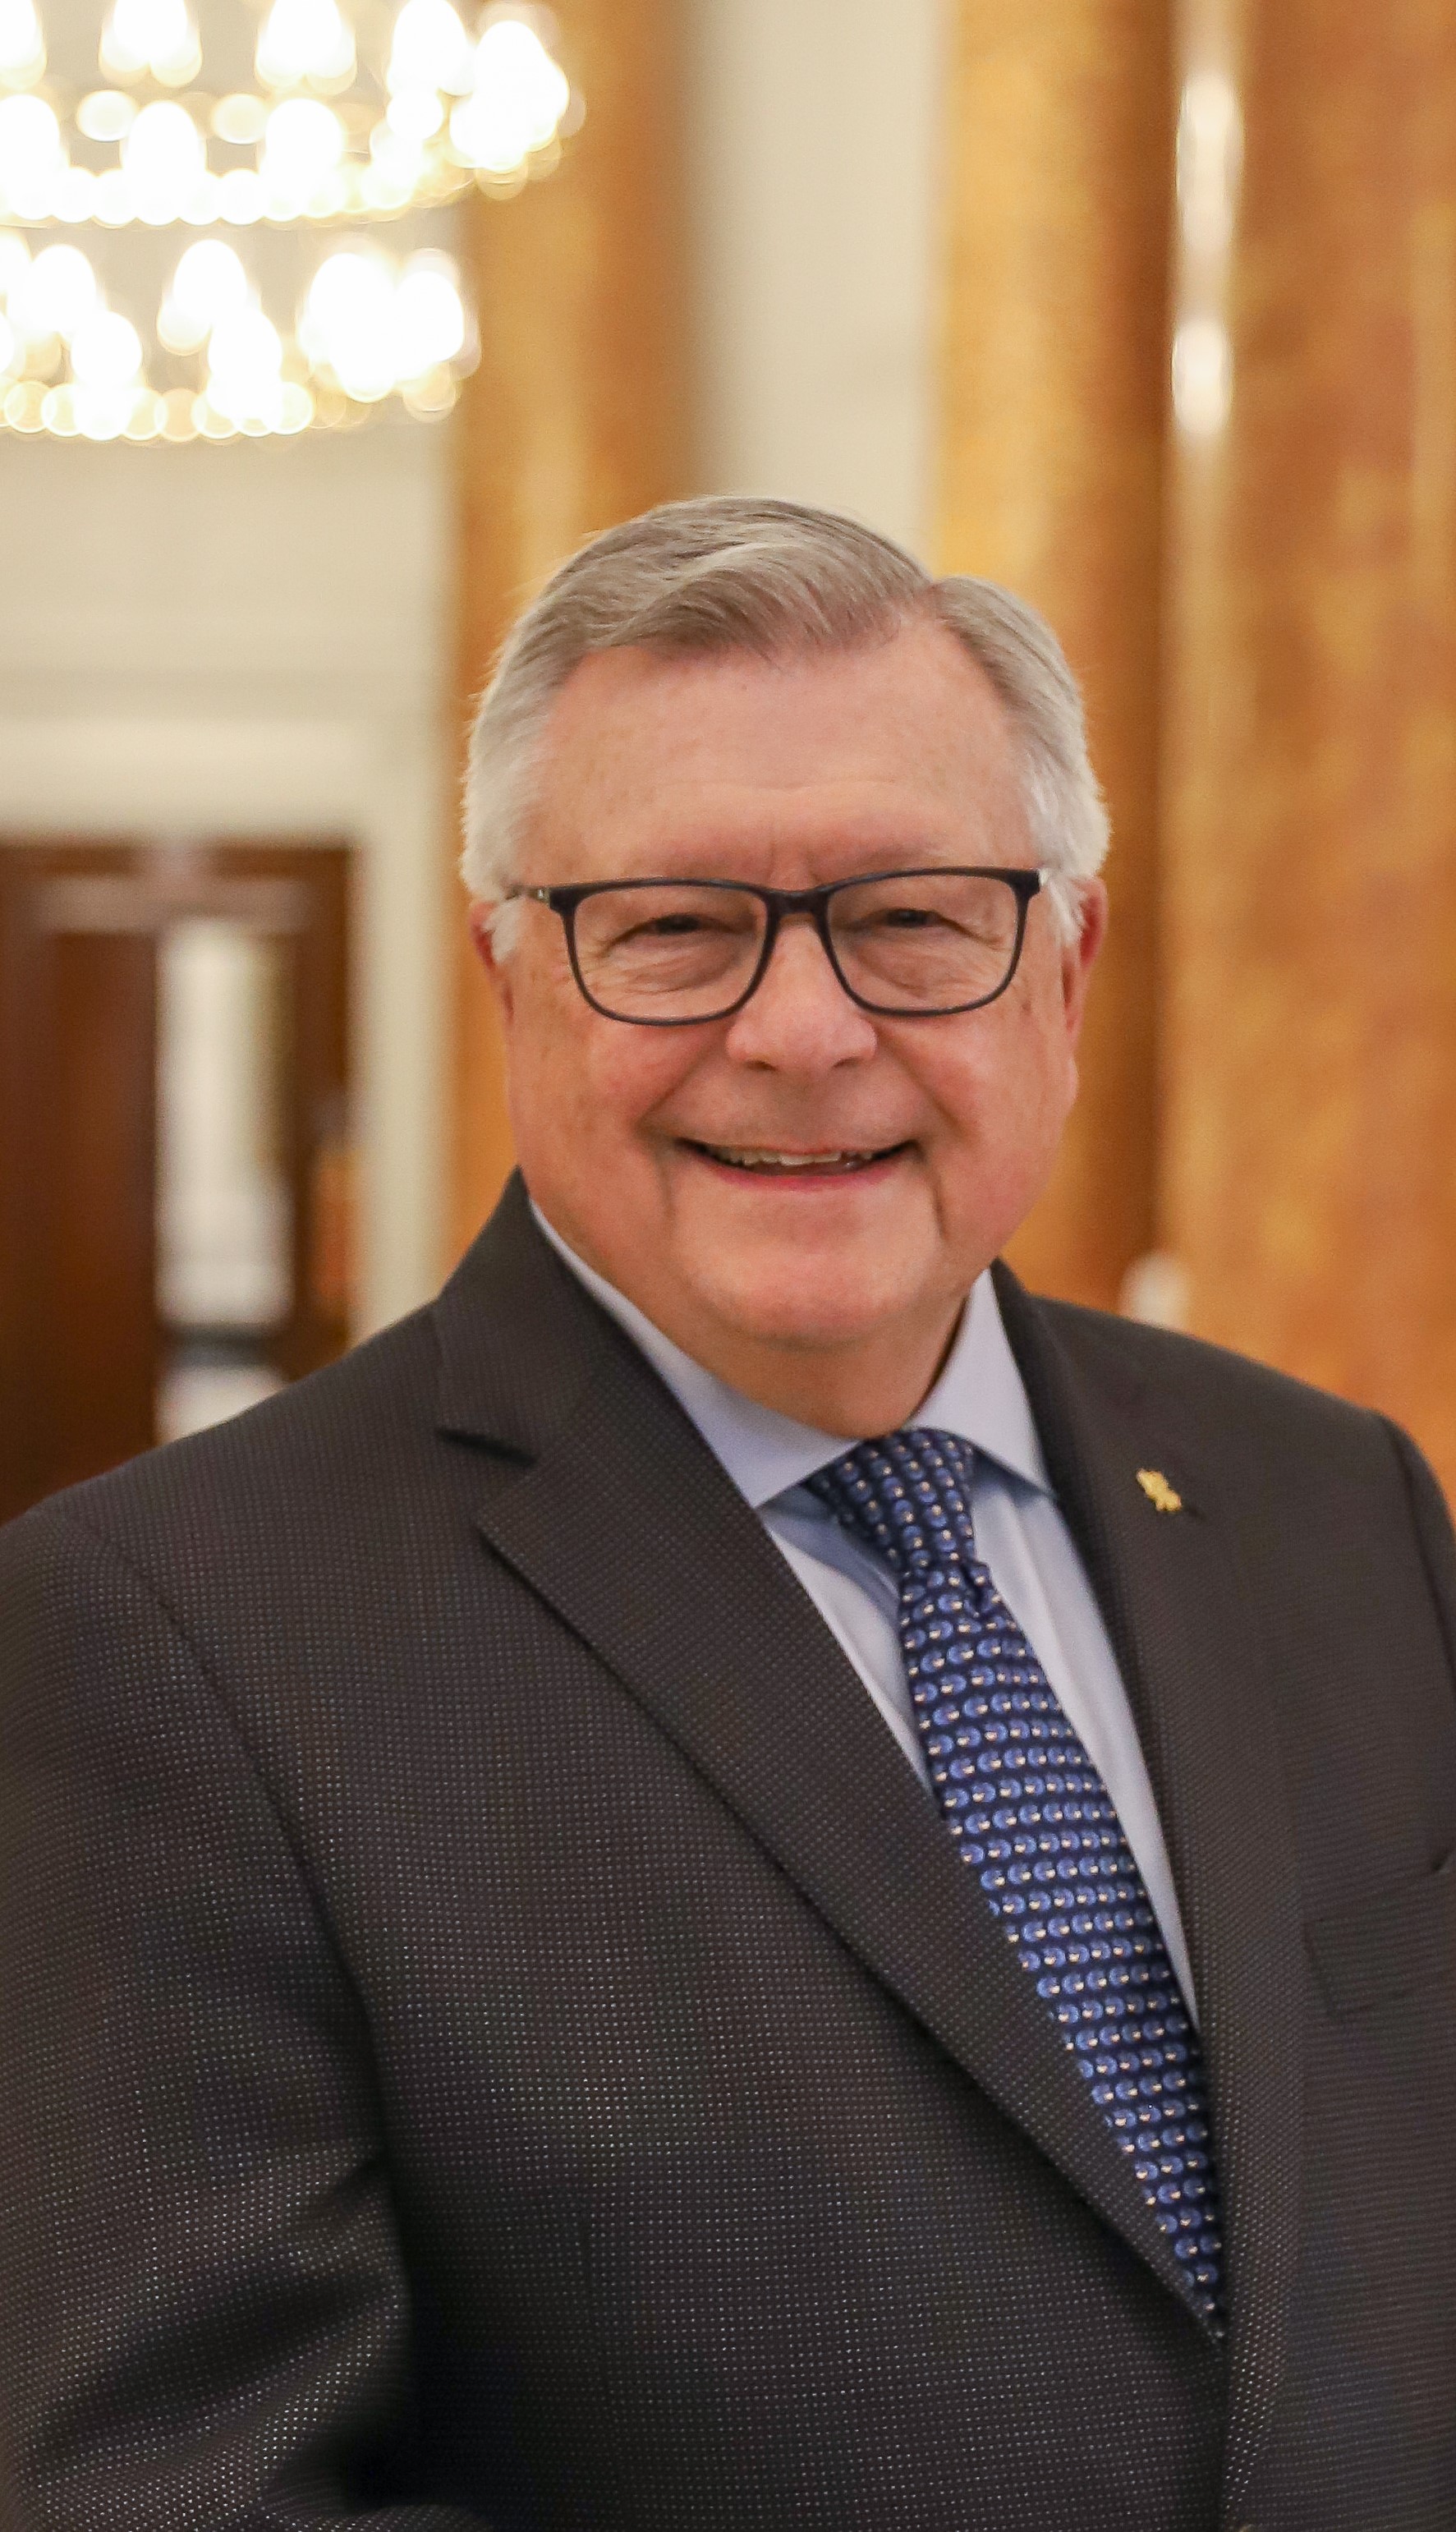 L’honorable Ralph Goodale, Haut-commissaire du Canada au Royaume-Uni de Grande-Bretagne et d'Irlande du Nord et Représentant permanent auprès de l’Organisation maritime internationale